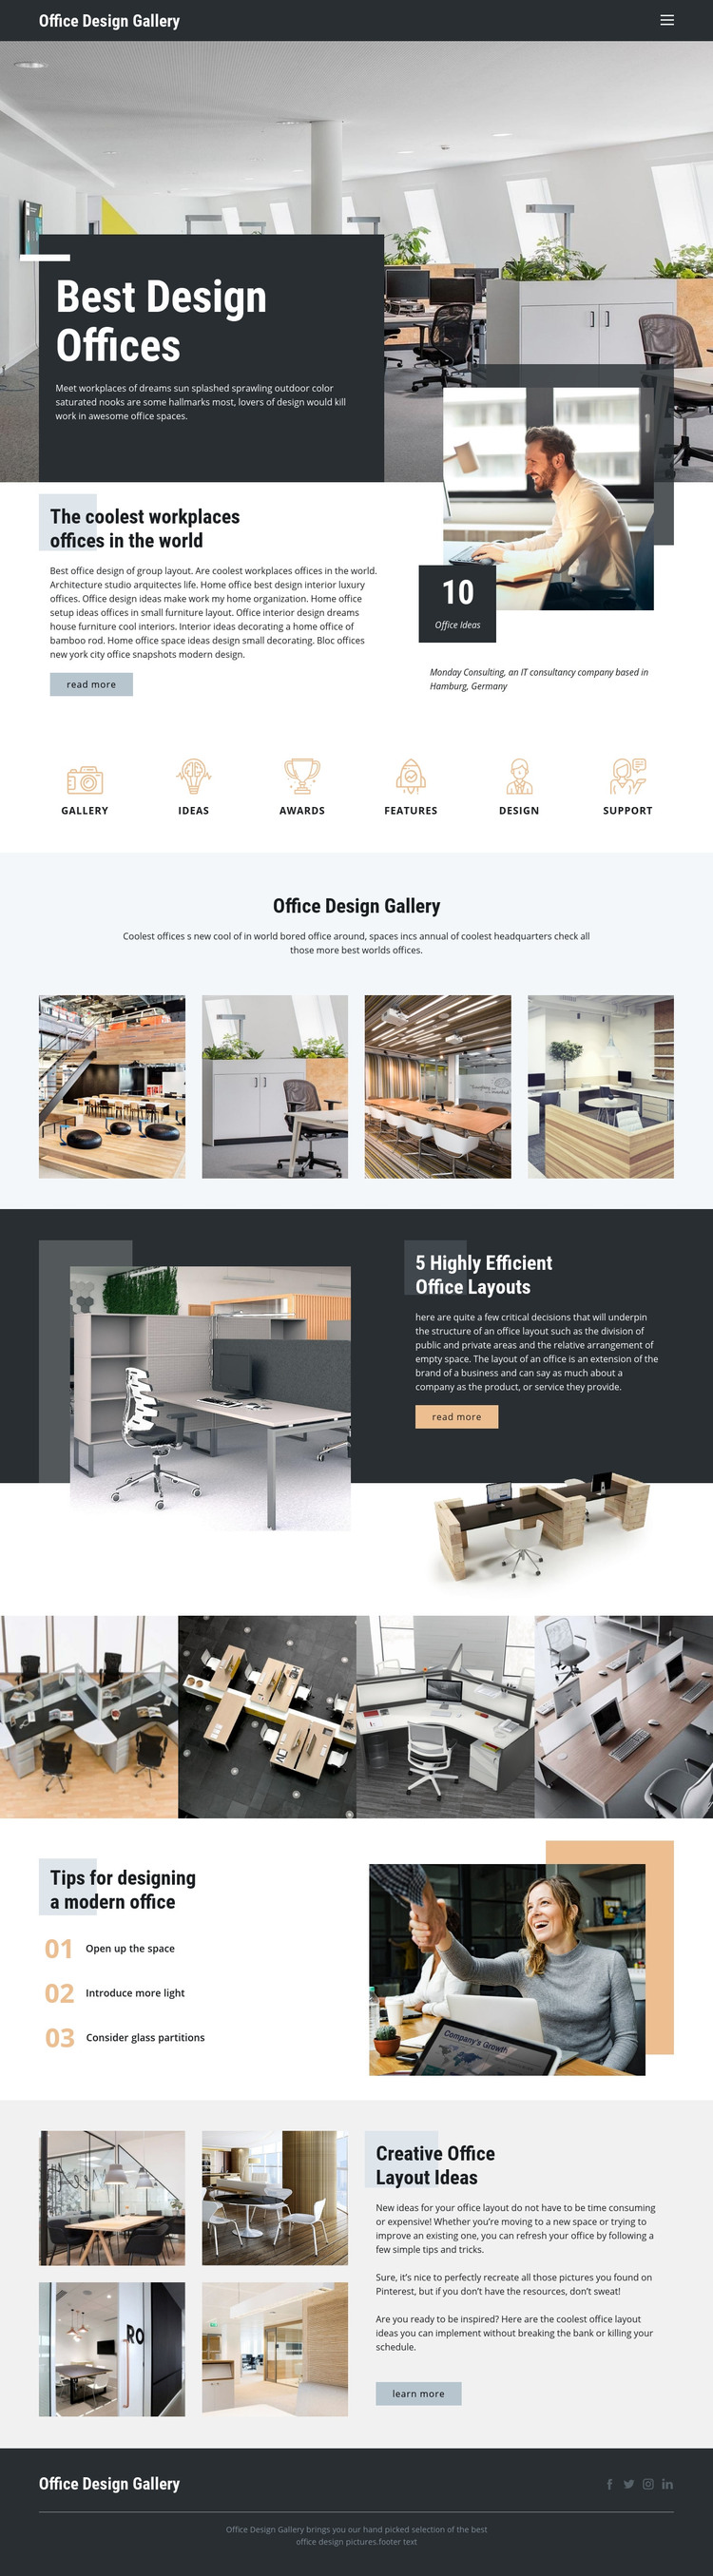 Best Design Offices Homepage Design,Blackberry Porsche Design P 9983